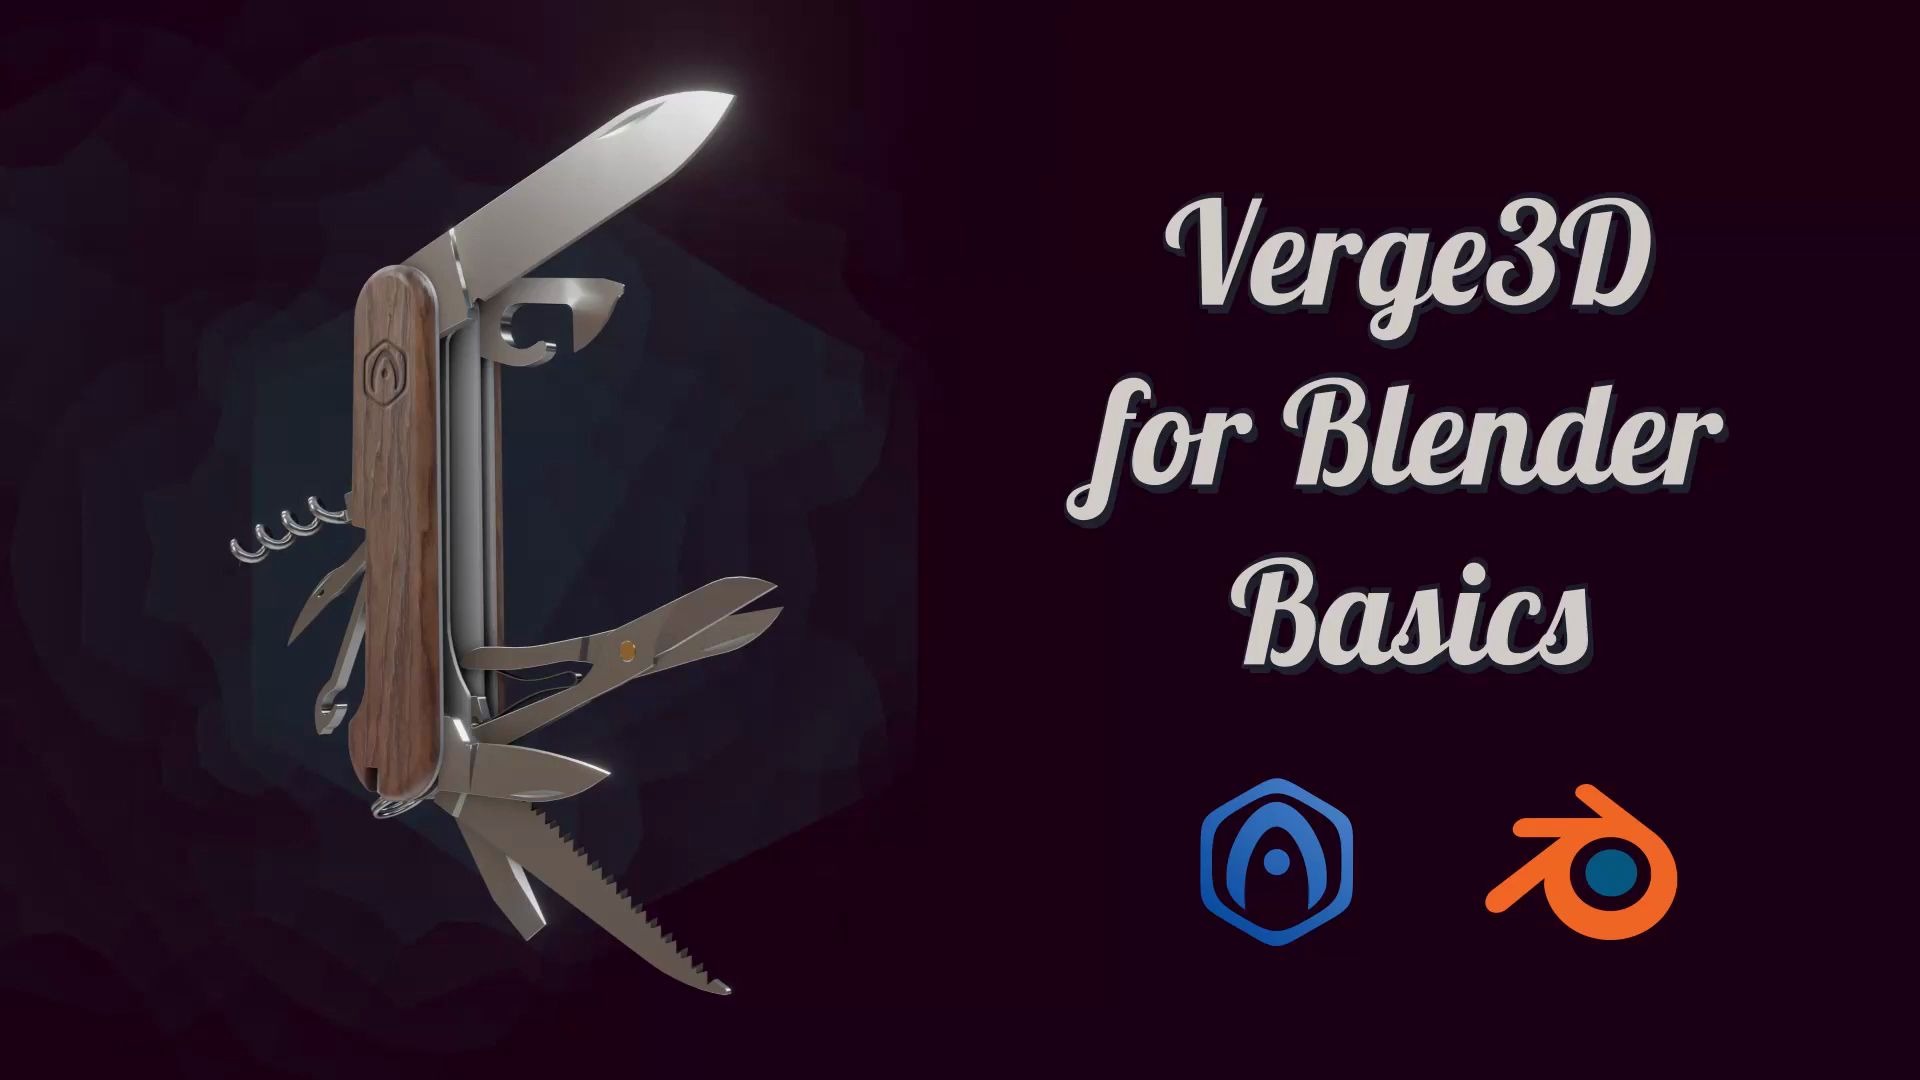 Verge3D for Blender 基础教程 - 2020